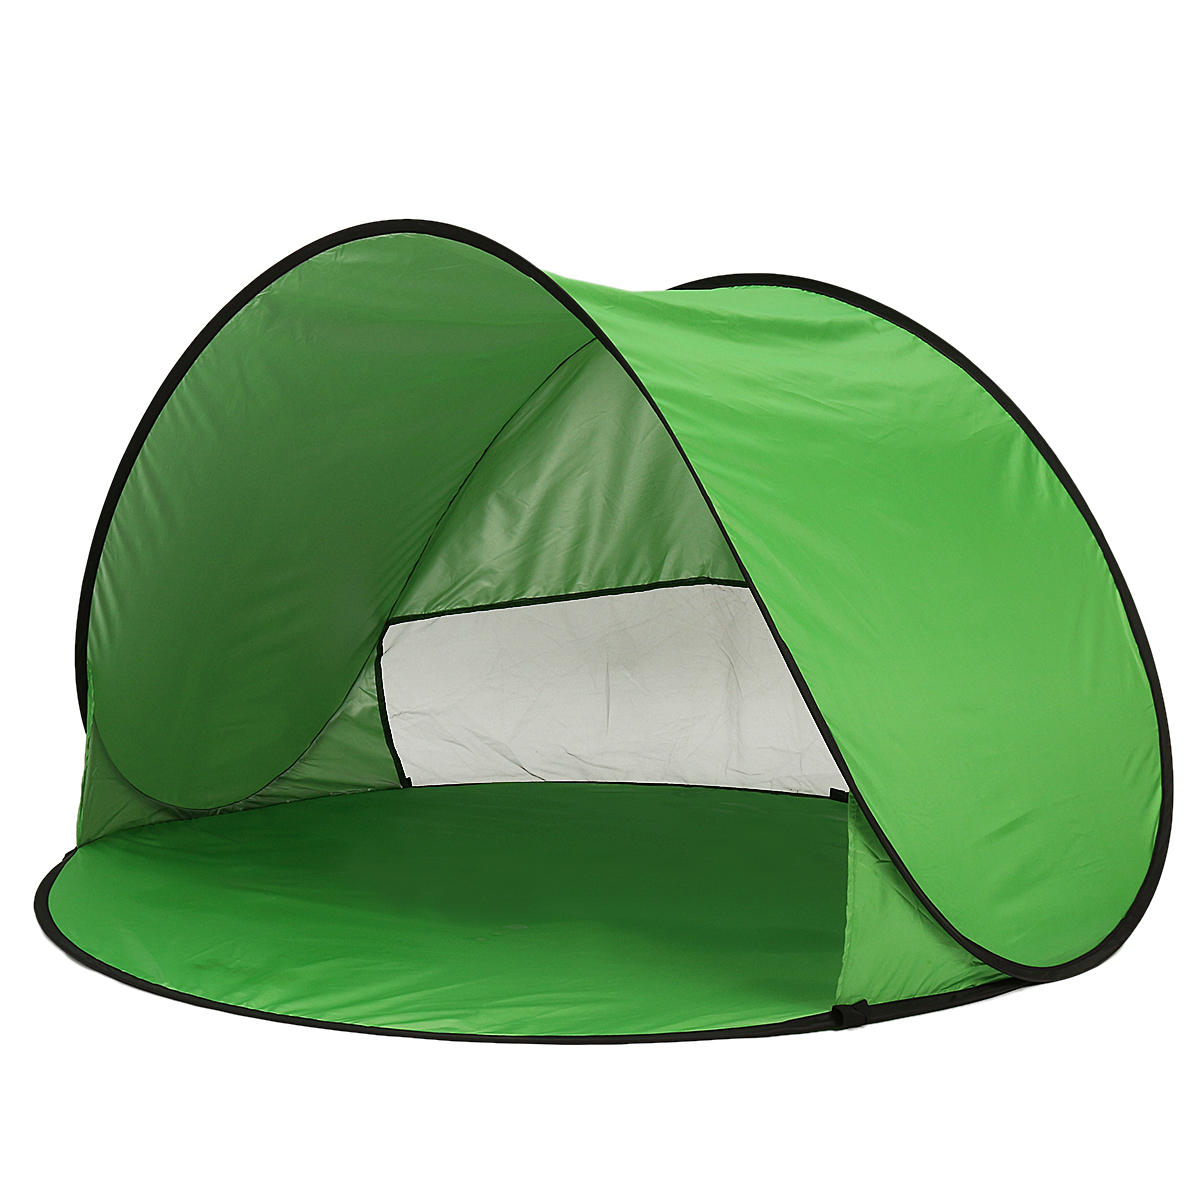 All'aperto 1-2 persone campeggio Tenda parasole UV automatico per parasole da spiaggia